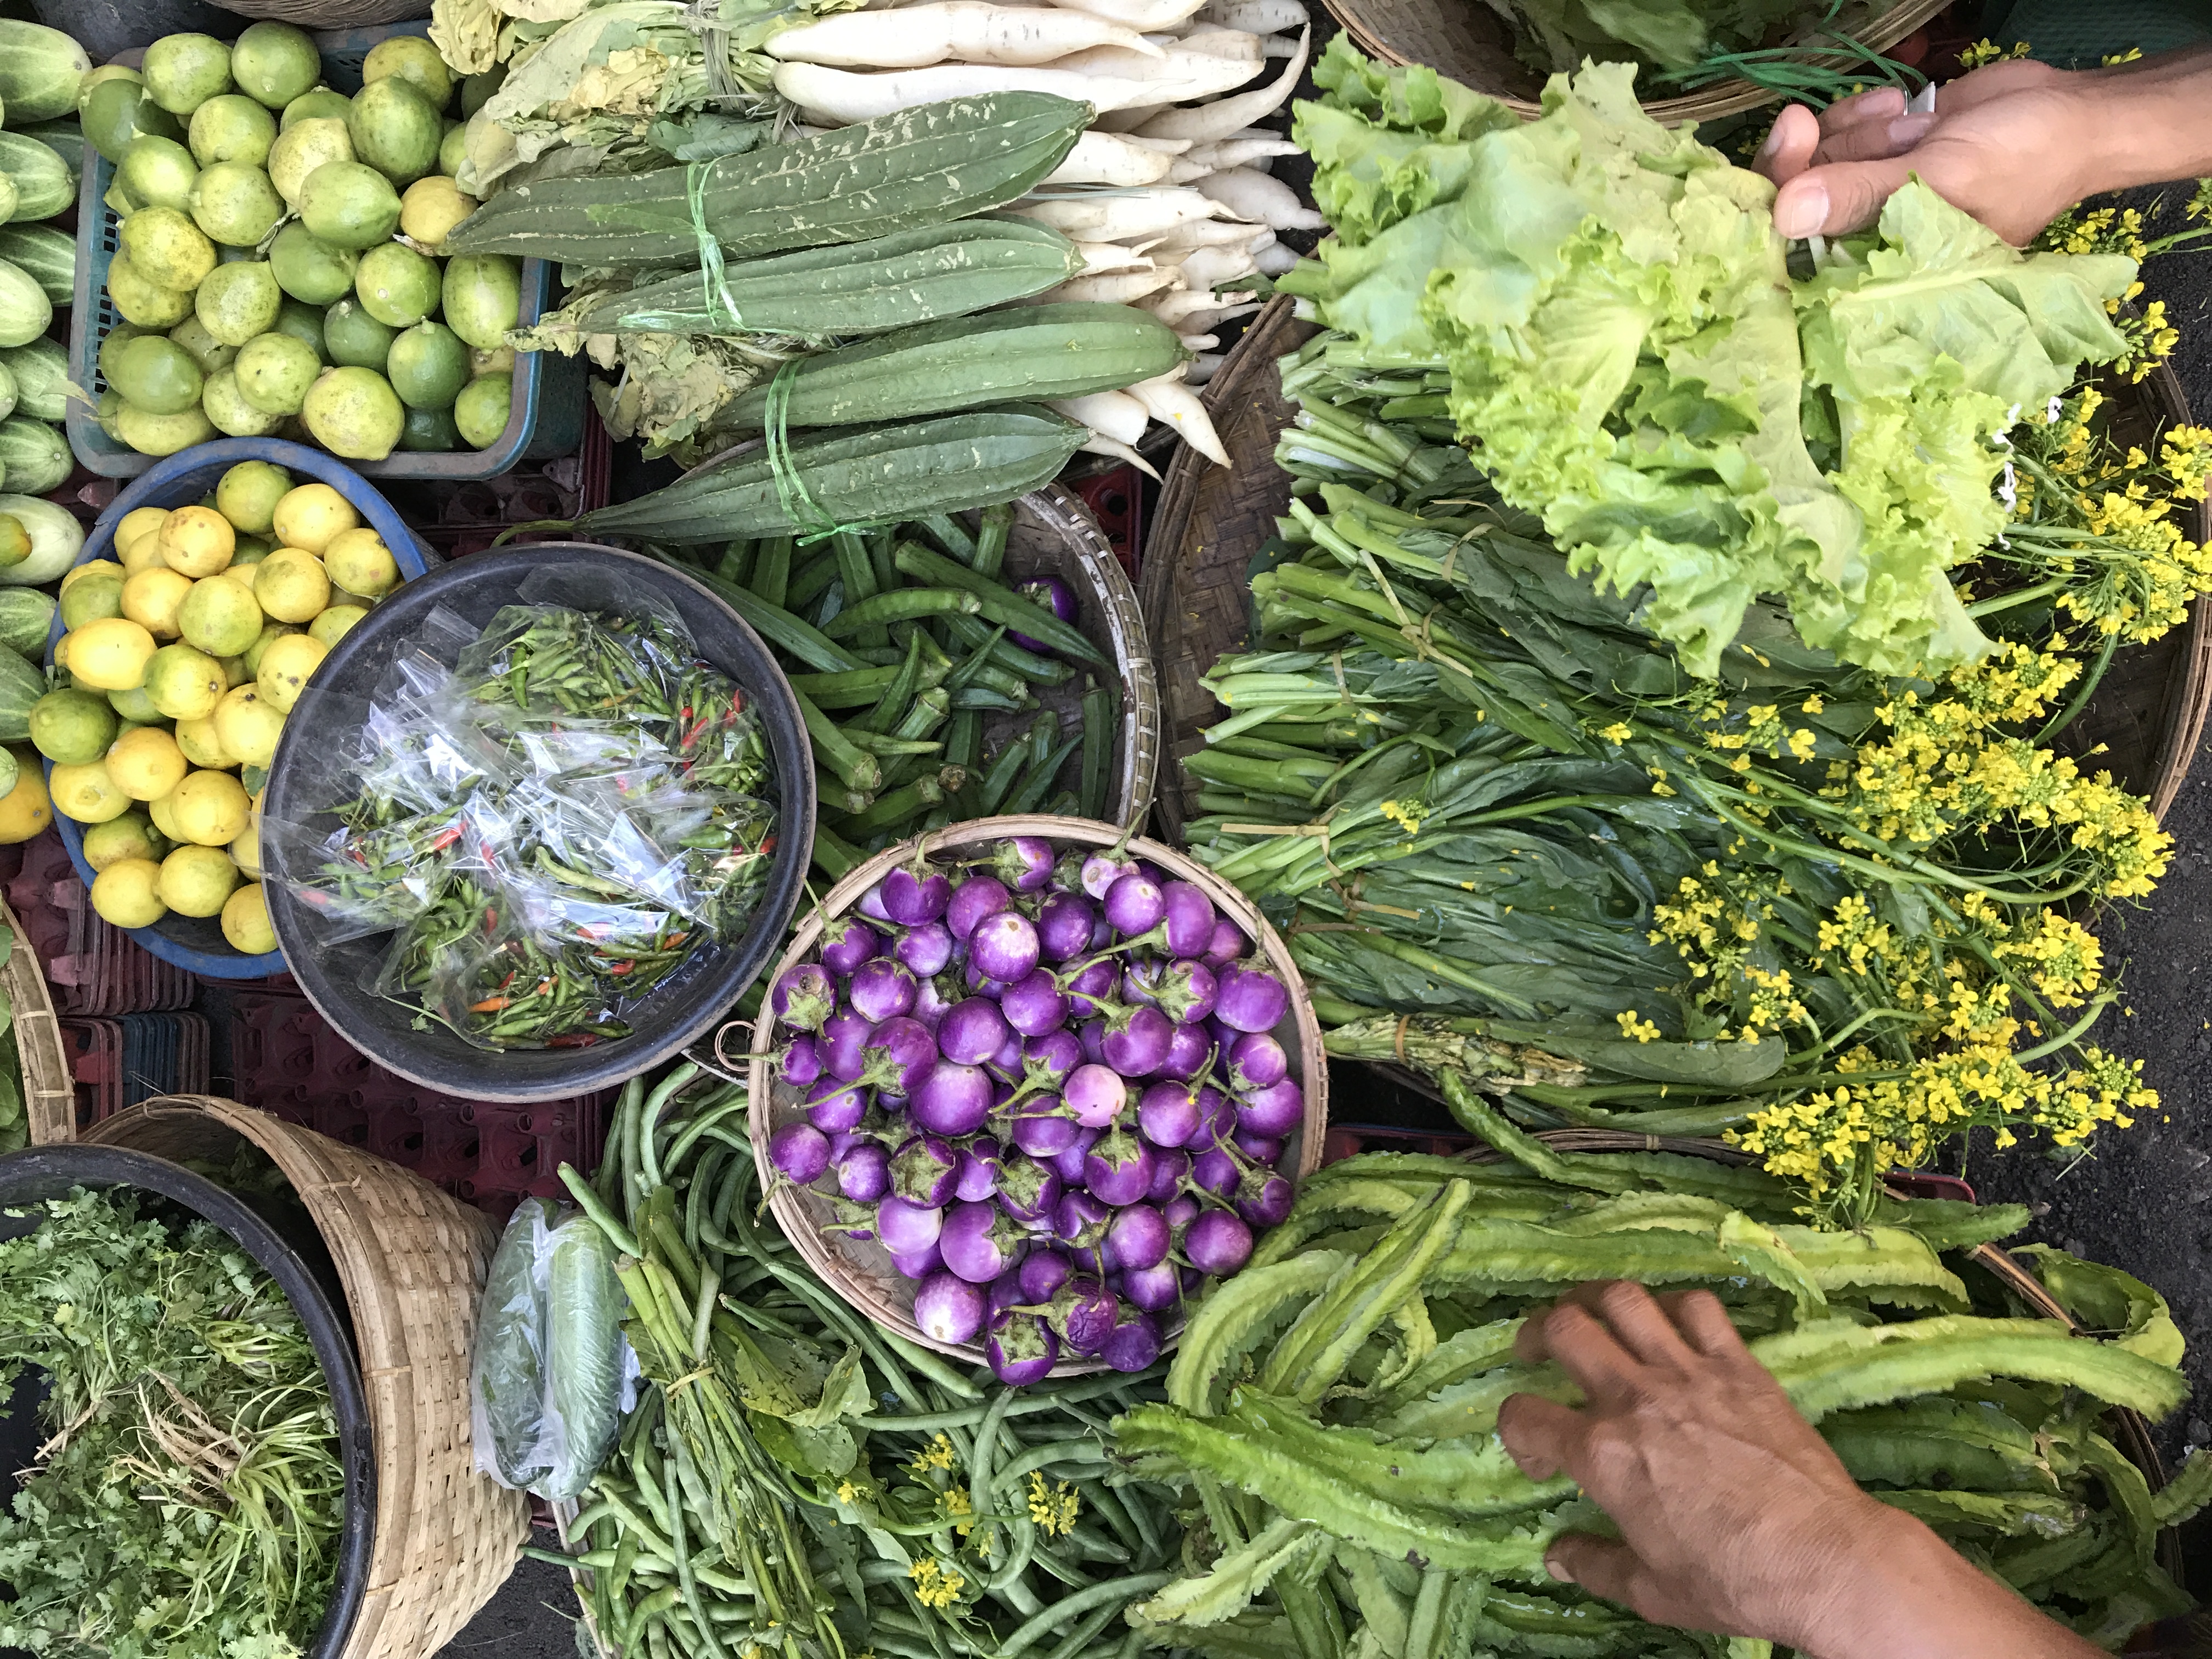 Marchés birmans, fruits, couleurs, saveurs… un régal pour les yeux.